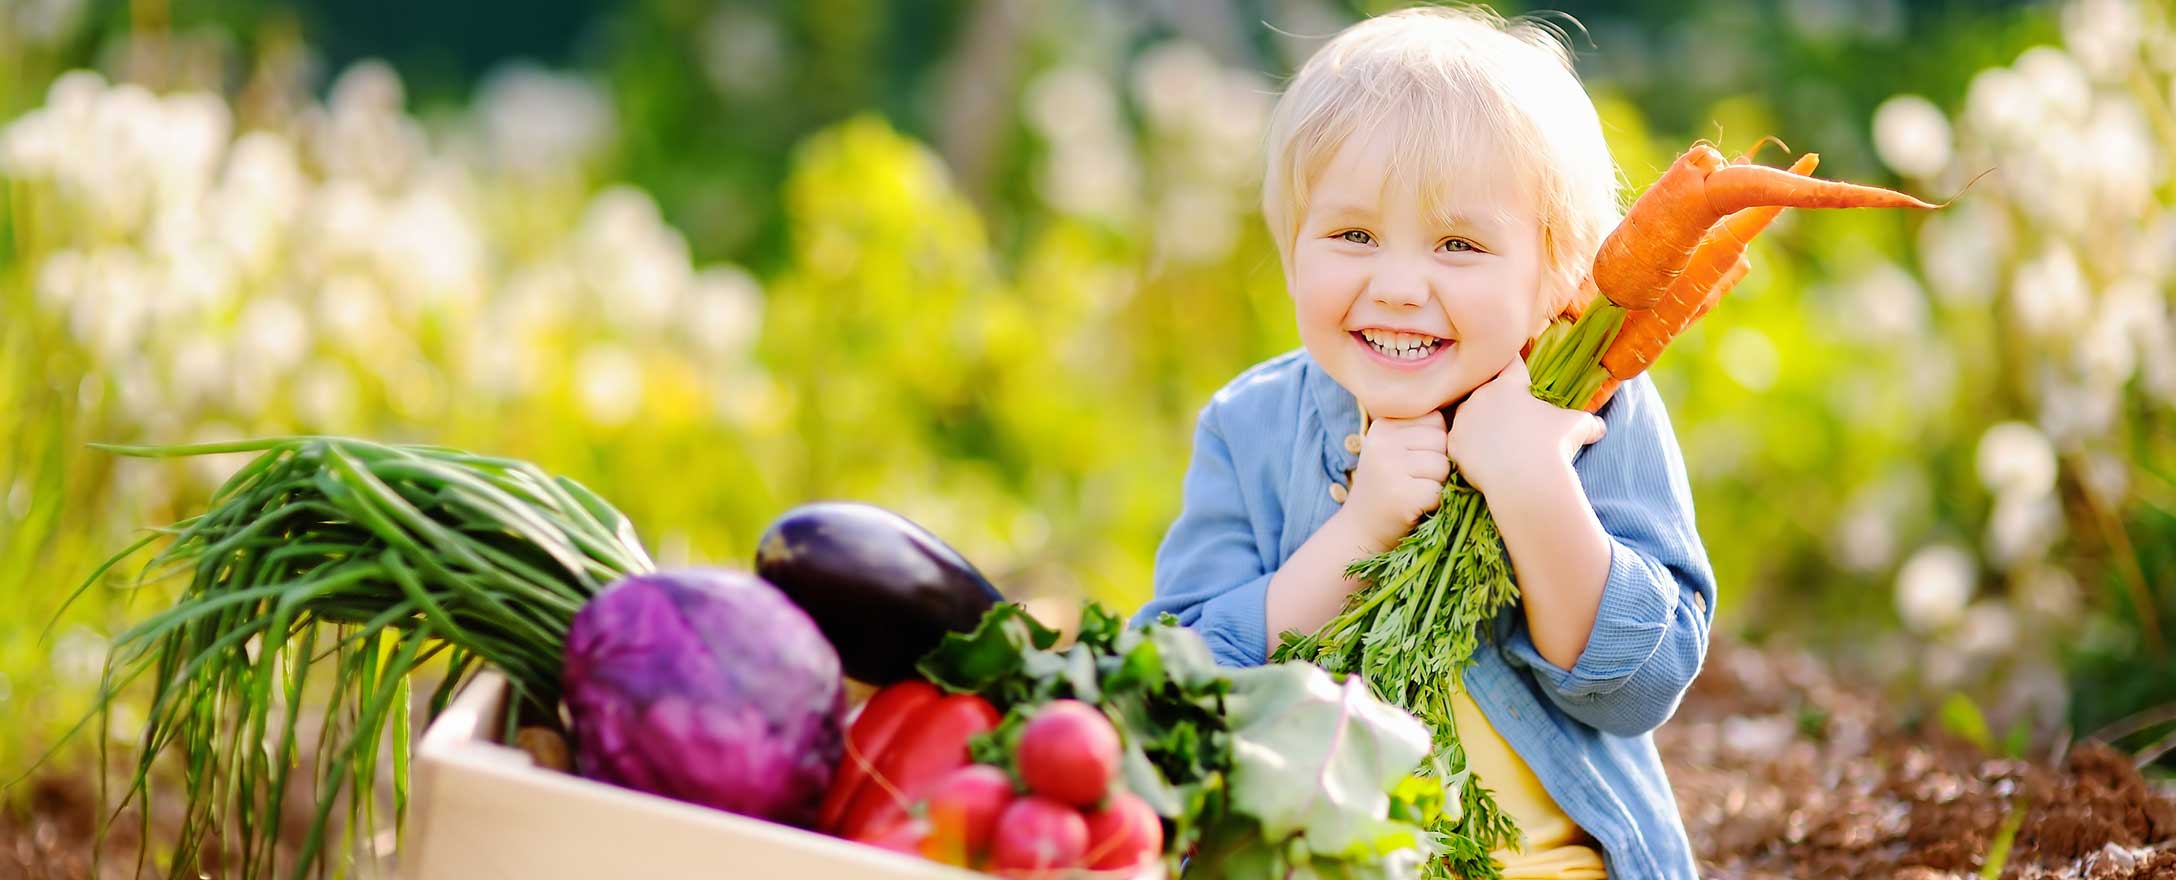 Kind lächelt mit Gemüse in der Hand